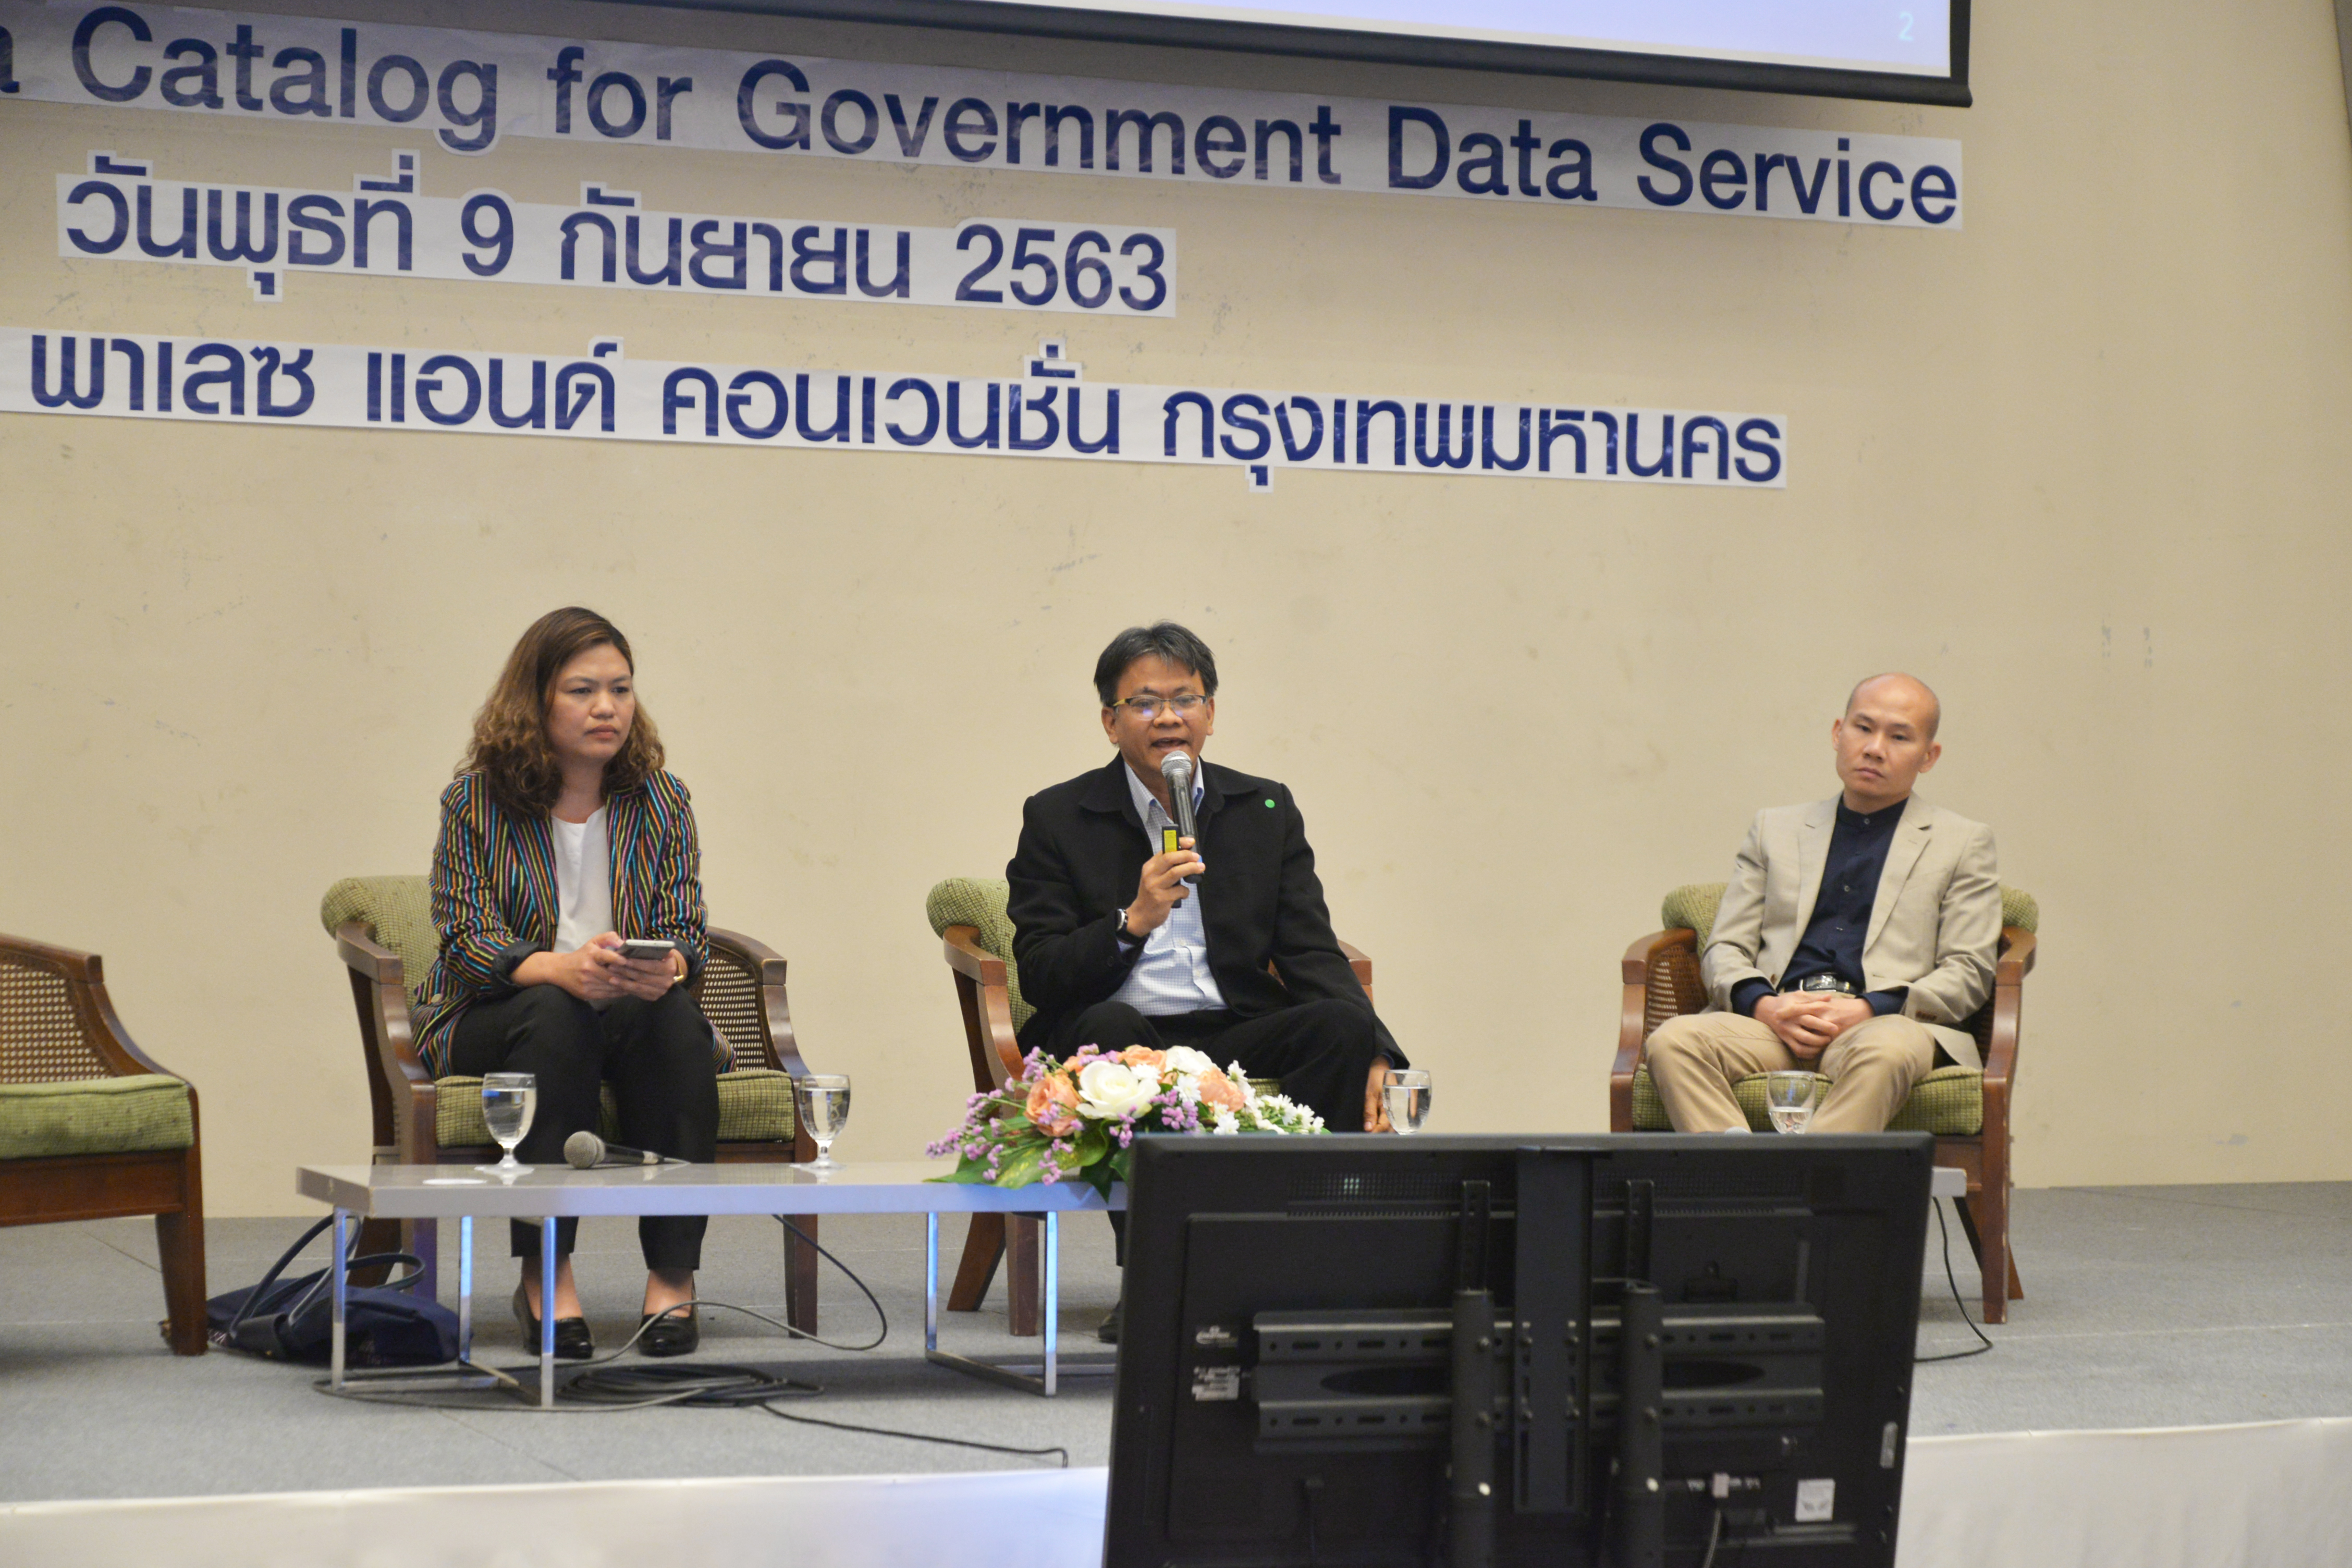 ประชุมเสวนา “Government Data Catalog for Government Data Service”